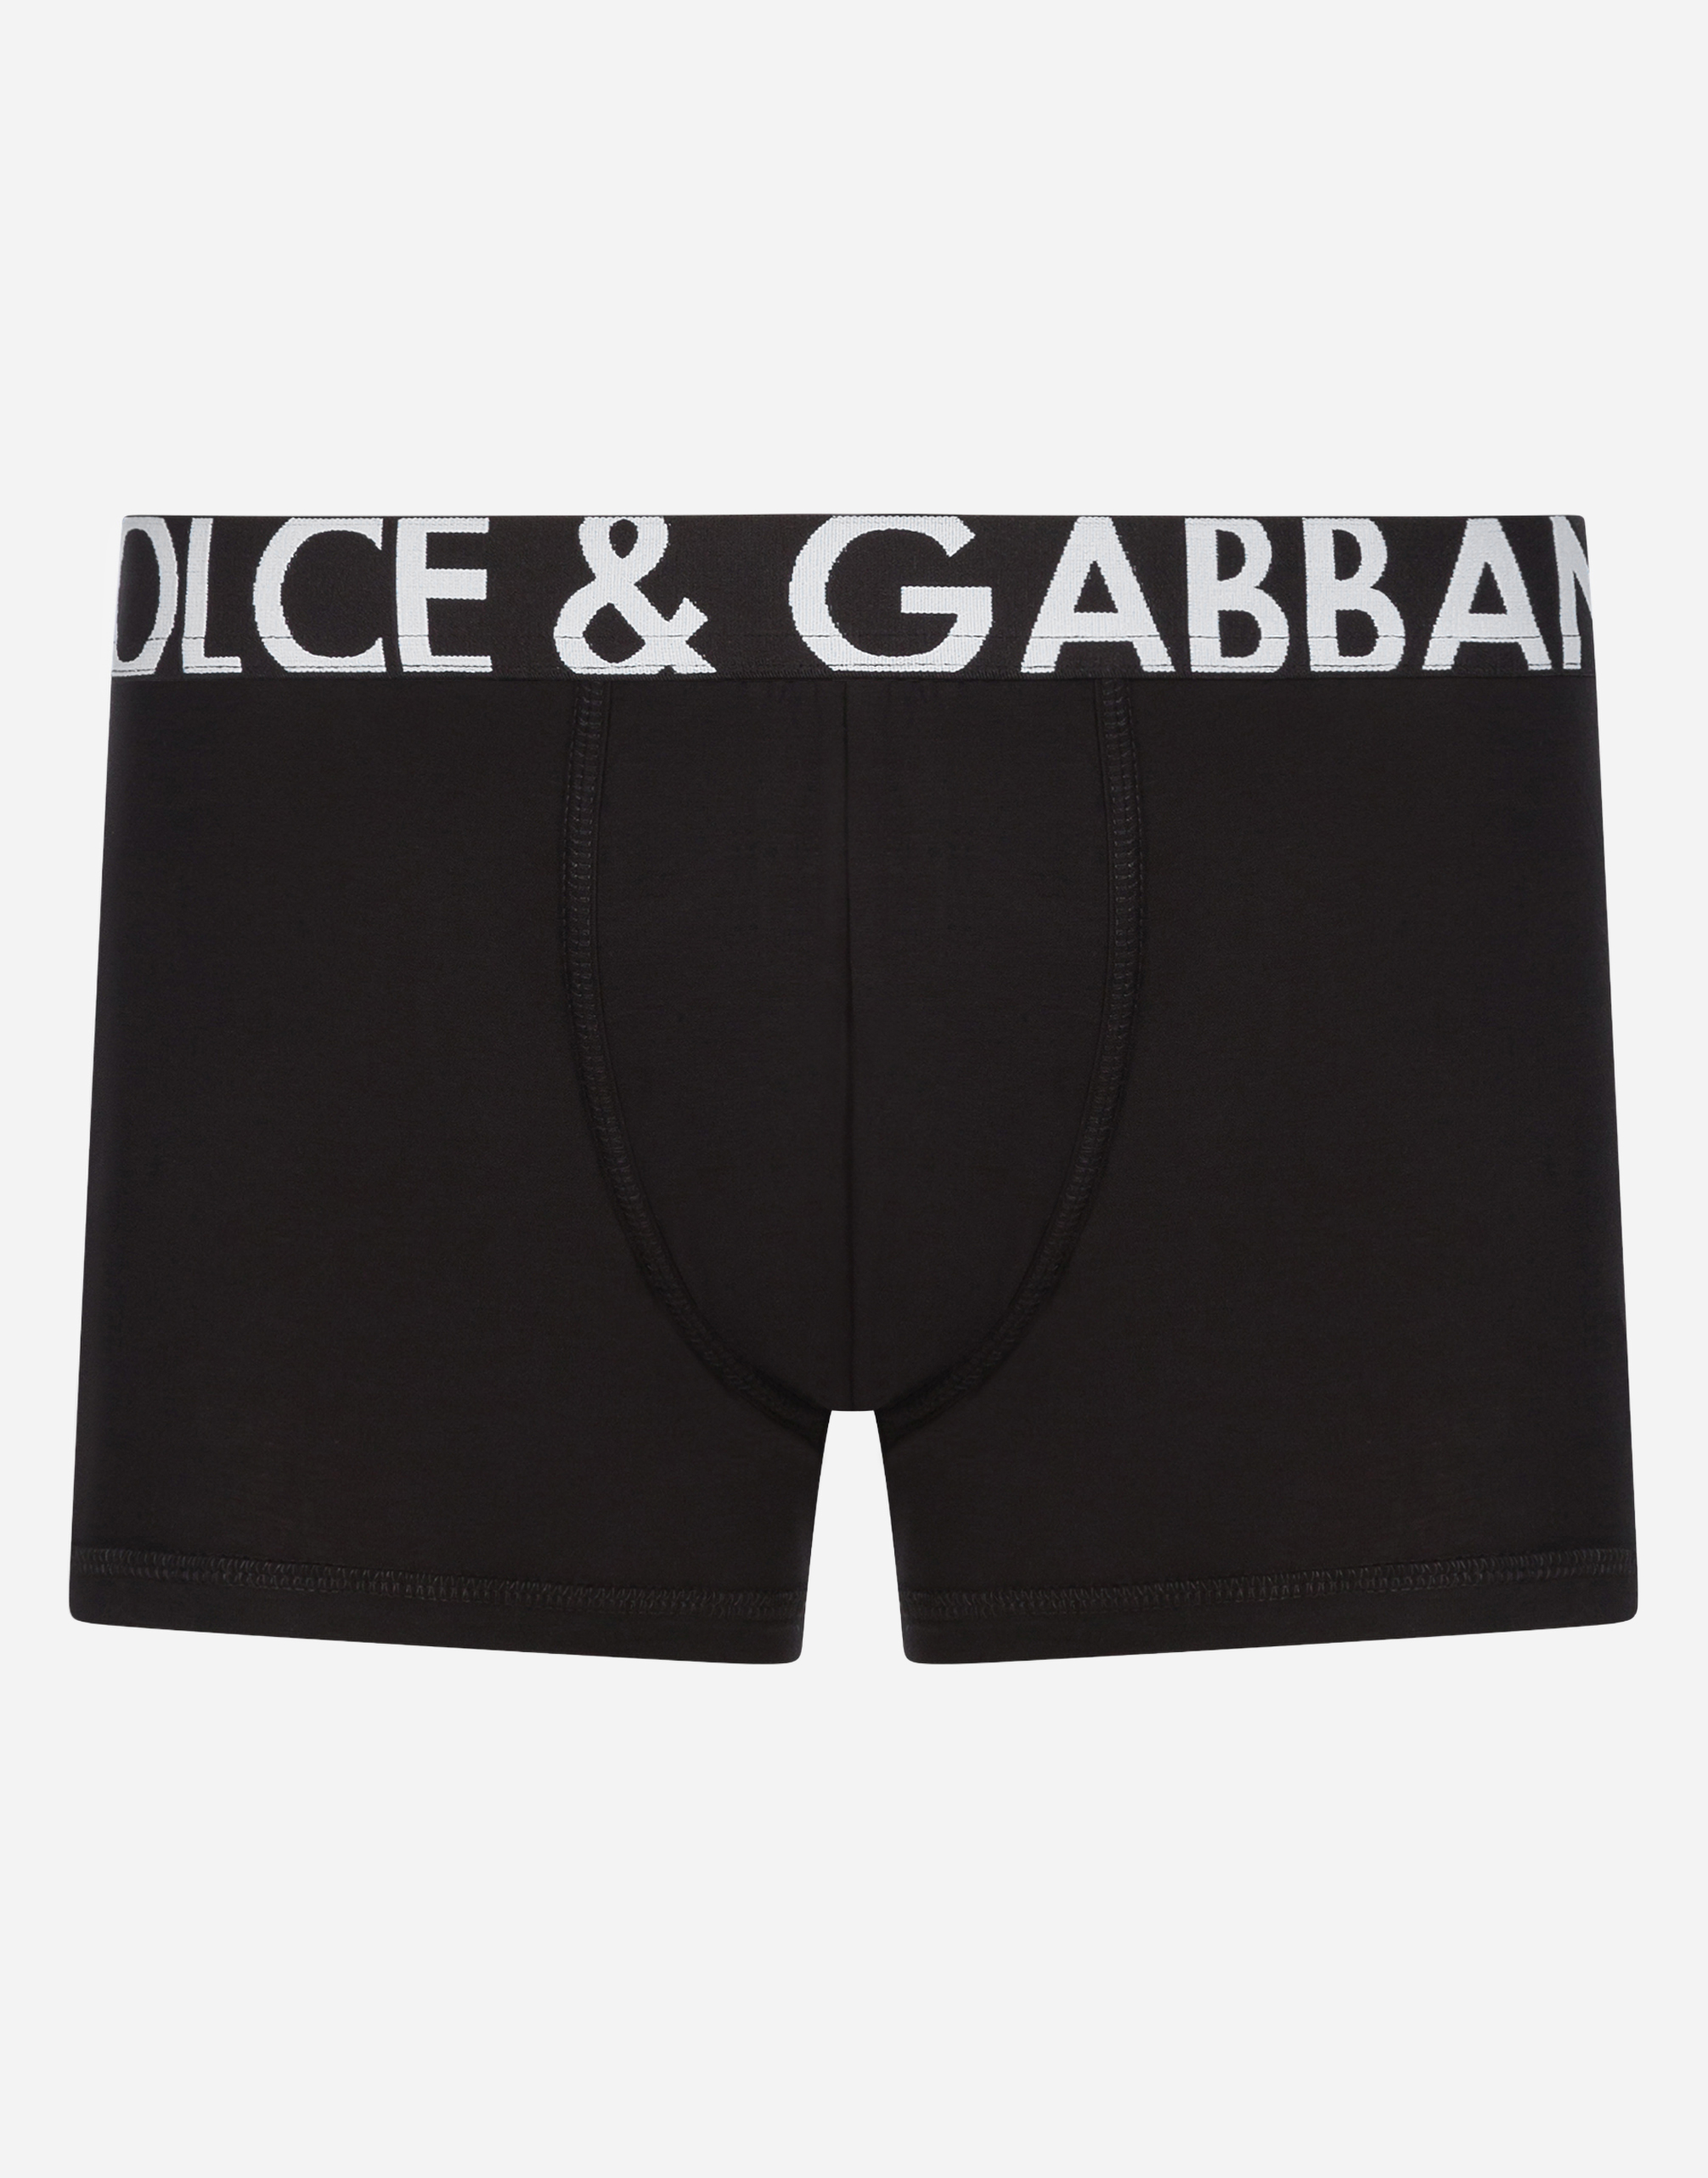 dolce gabbana men underwear